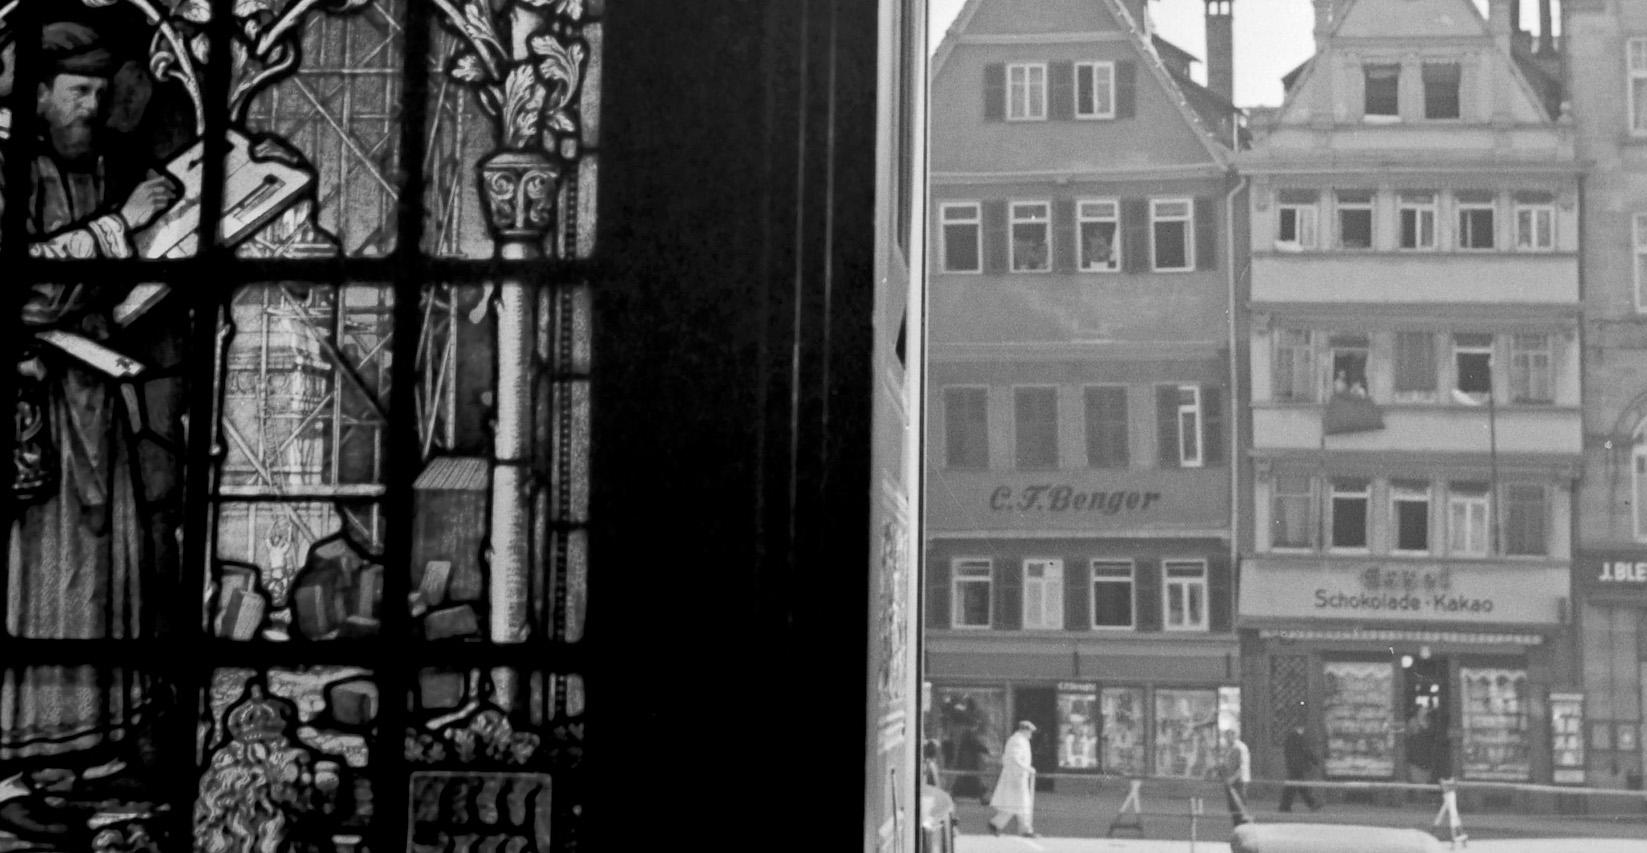 Vue du passage d'achat, Stuttgart, Allemagne, 1935, Imprimé ultérieurement - Photograph de Karl Heinrich Lämmel